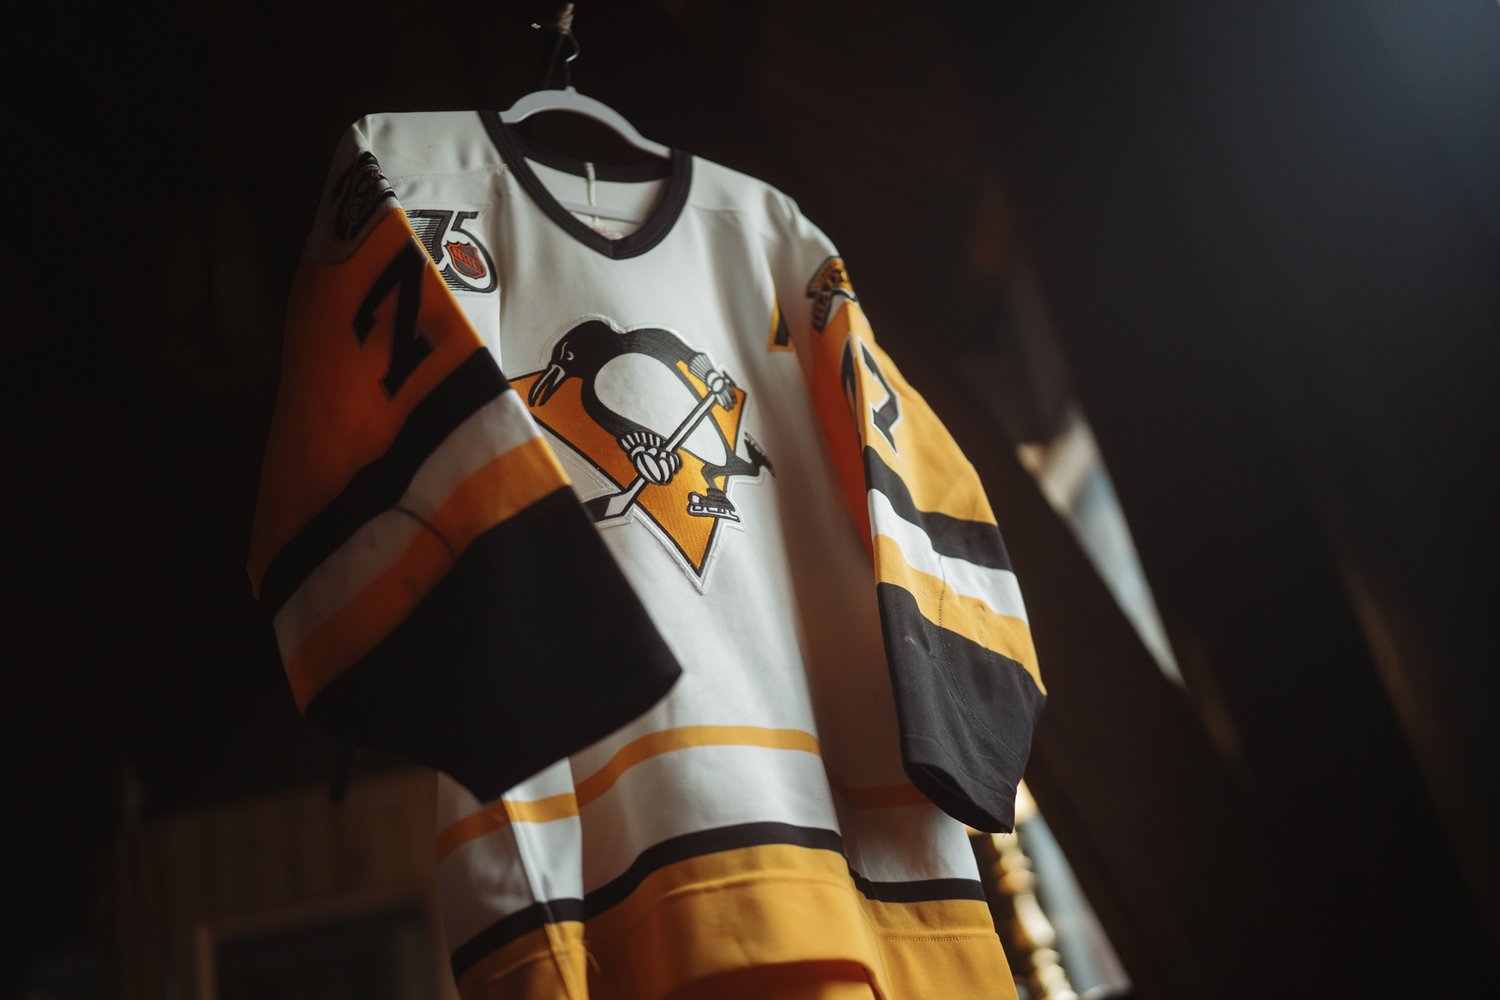 Buy Vintage 90s Pittsburgh Penguins Kevin Stevens 25 CCM Jersey